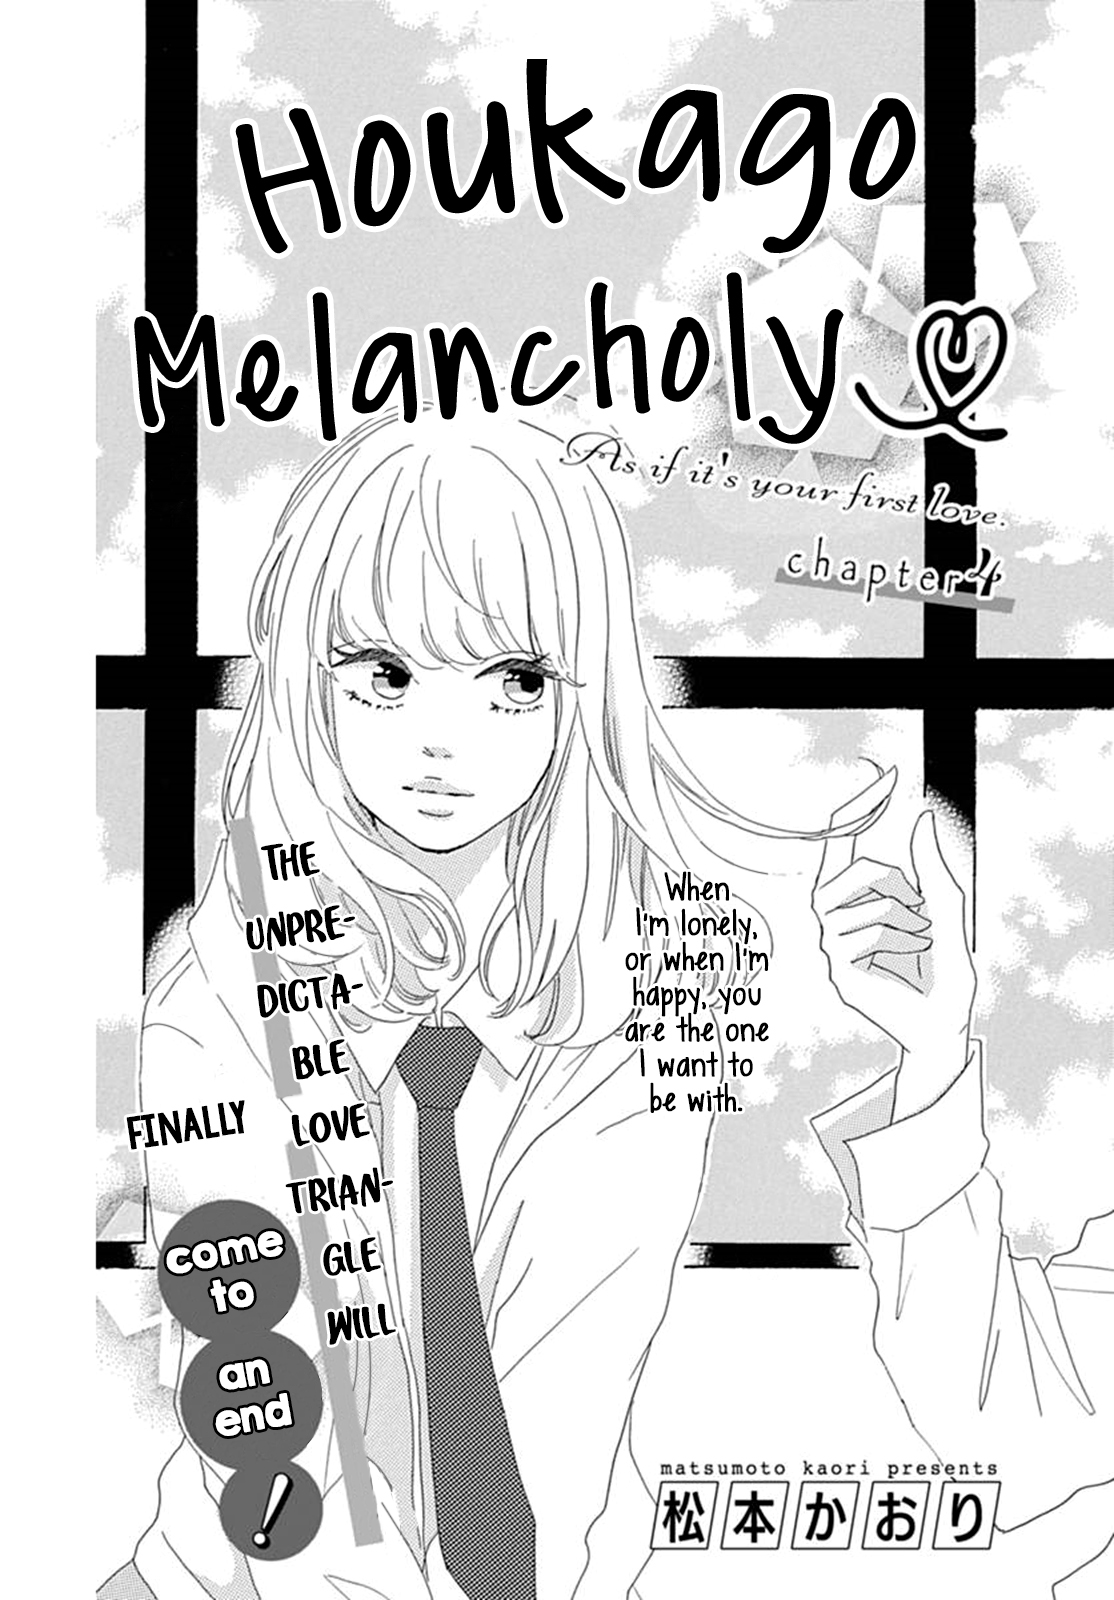 Houkago Melancholy Vol. 1 Ch. 4